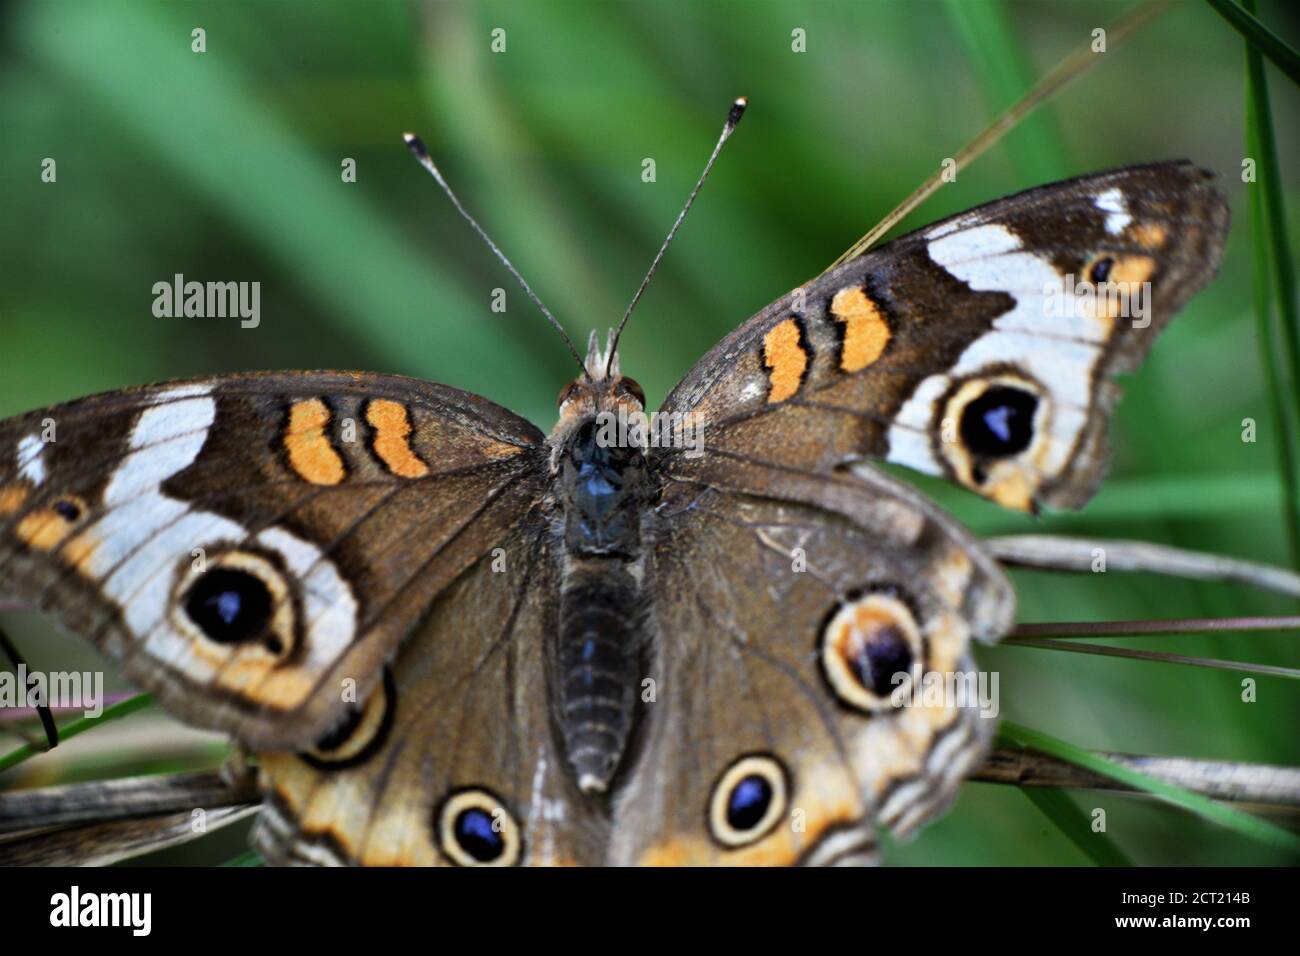 Mariposa común buckeye más vieja y descolorida. Foto de stock